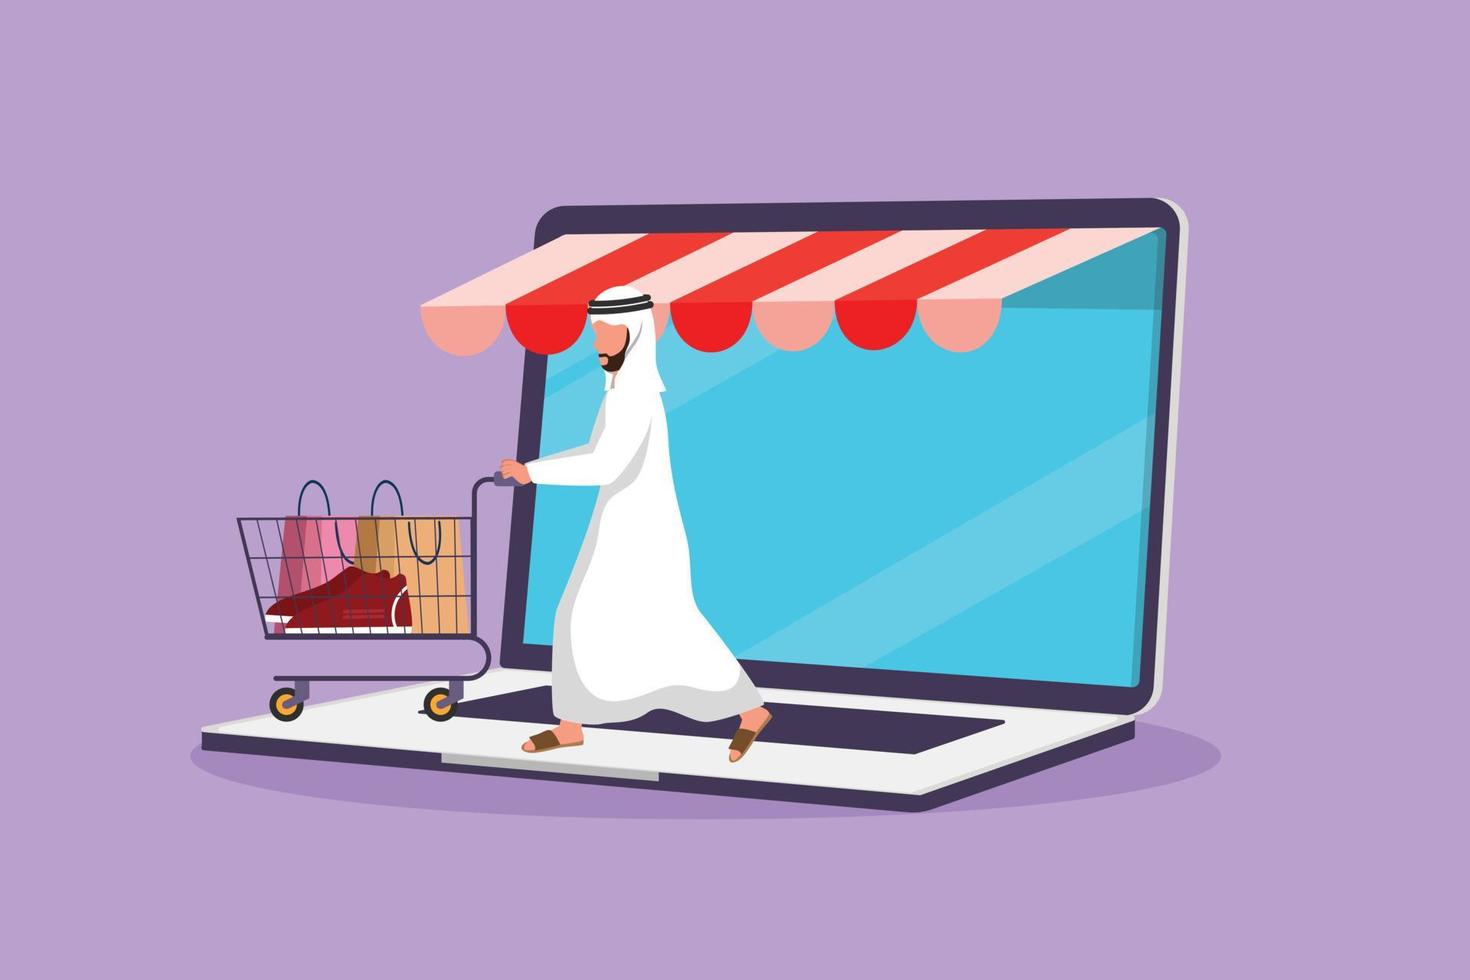 Cartoon Flat Style Zeichnung arabischer Mann kommt aus Laptop-Bildschirm und schiebt Einkaufswagen. Verkauf, digitaler Lebensstil, Konsum, Marketing. Online-Shop-Konzept. Grafikdesign-Vektorillustration vektor